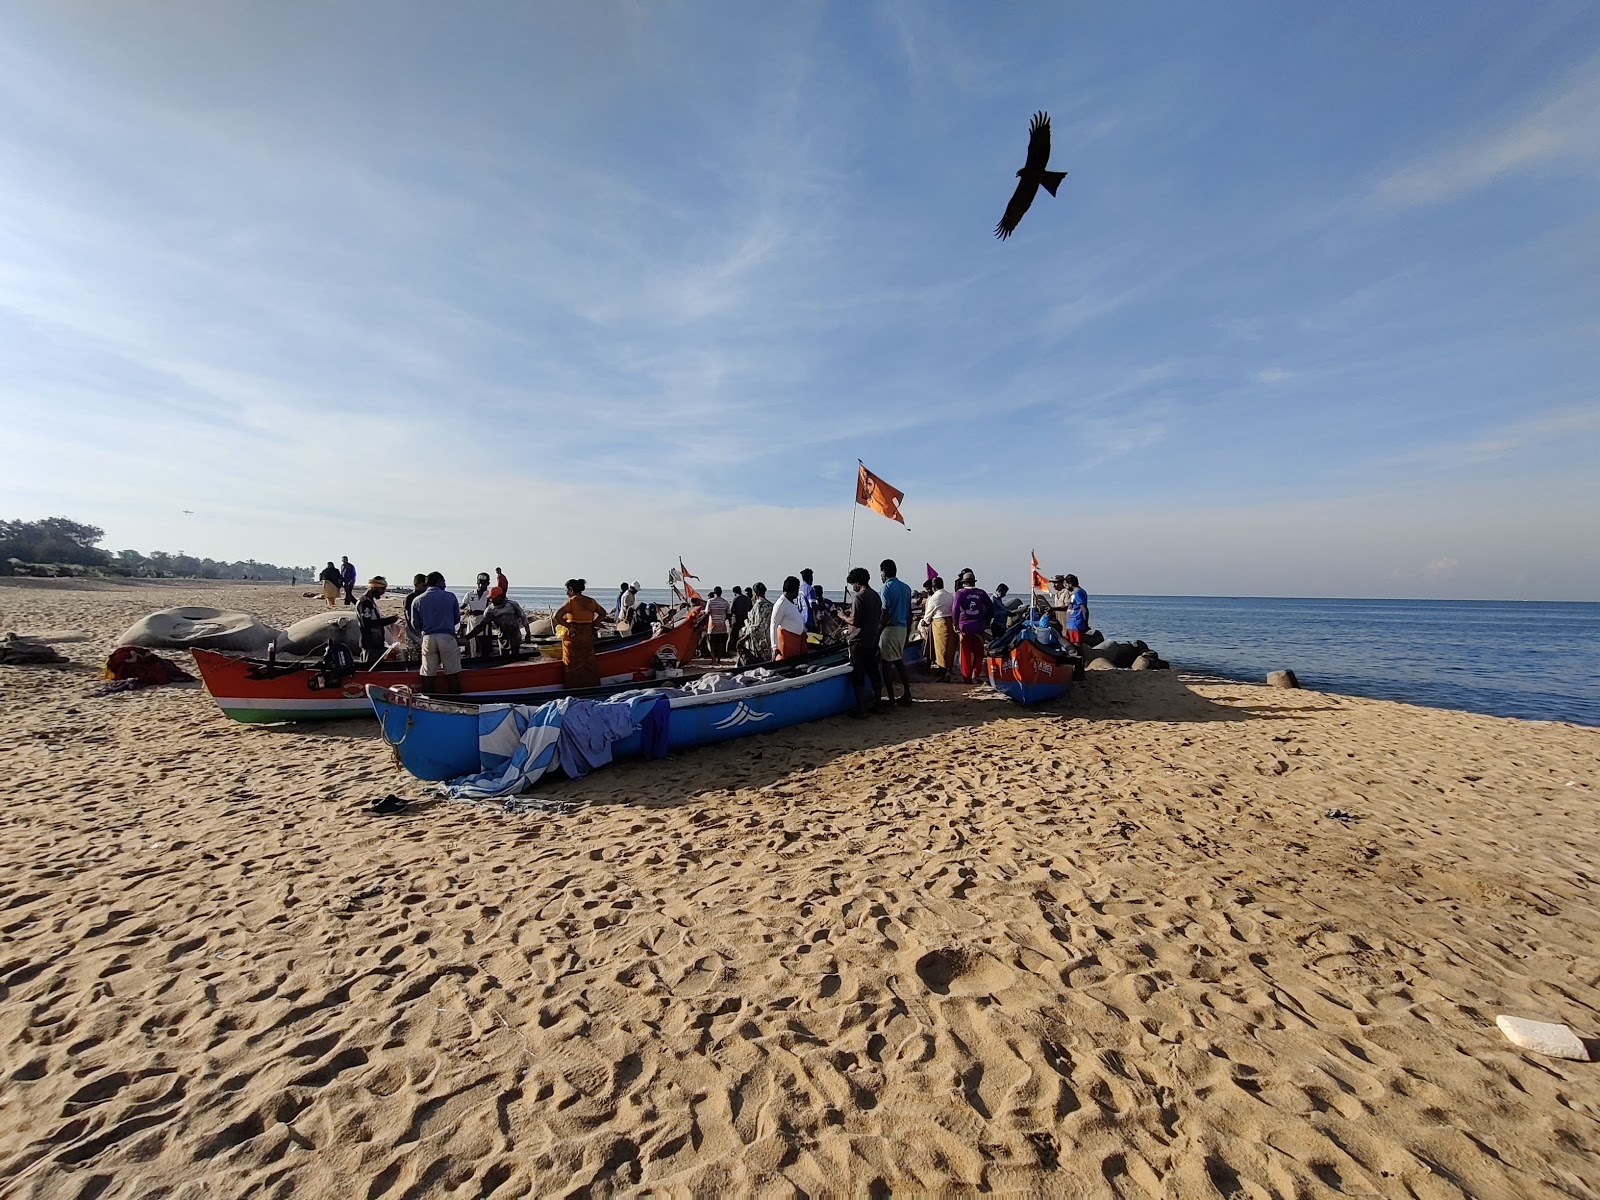 Ullal beach'in fotoğrafı - rahatlamayı sevenler arasında popüler bir yer